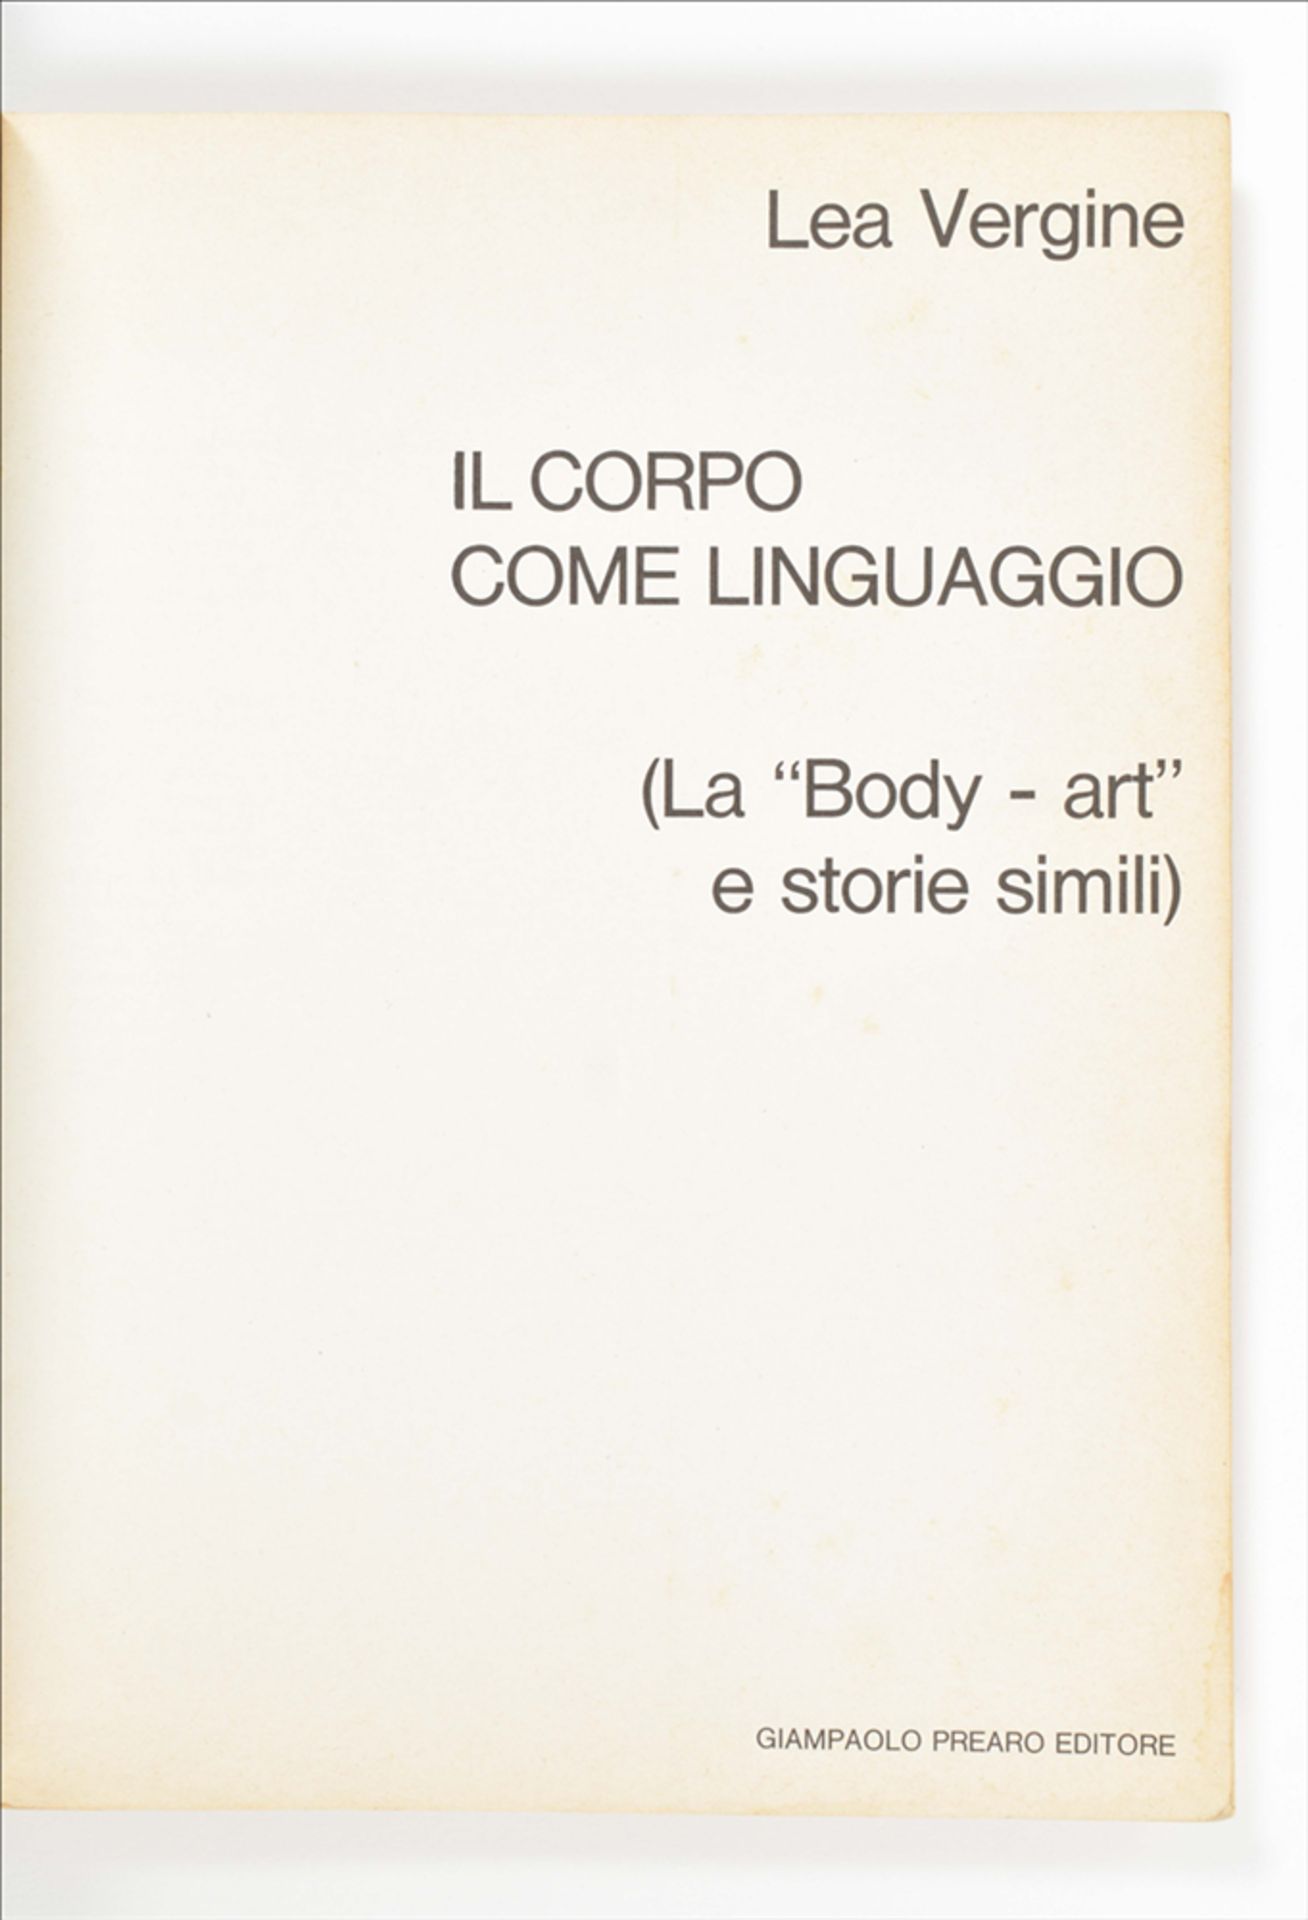 Il Corpo/Body Art and L'Art Corporel - Image 3 of 8